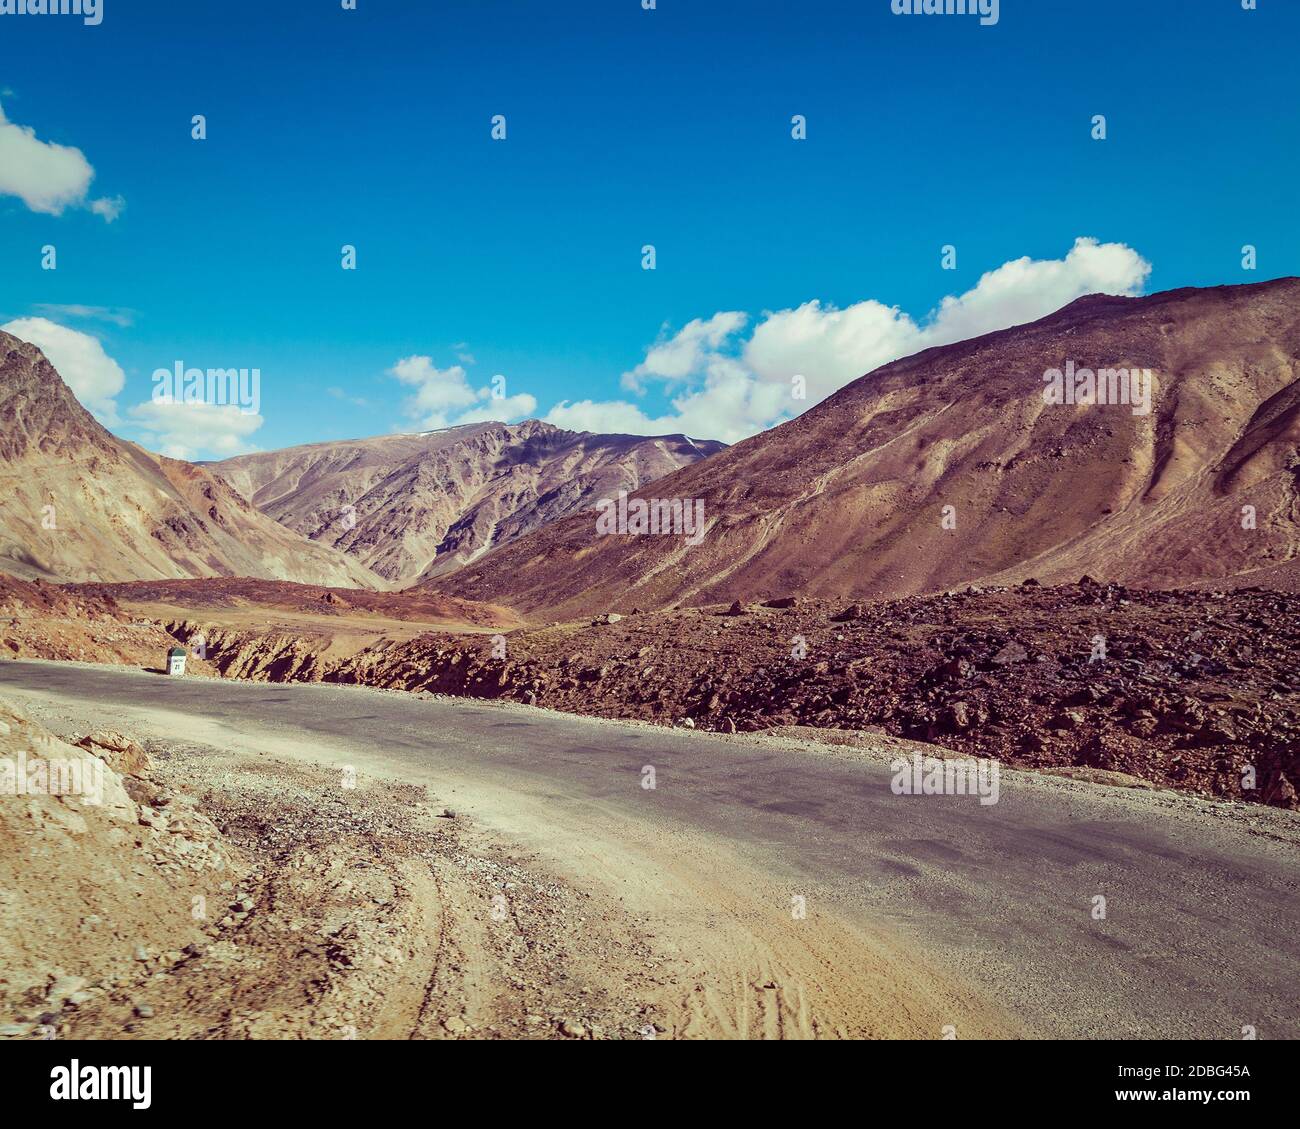 Immagine in stile hipster filtrato effetto retrò vintage della strada Manali-Leh verso Ladakh in Himalaya indiana vicino al passo Baralacha-la. Himachal Pradesh, India Foto Stock